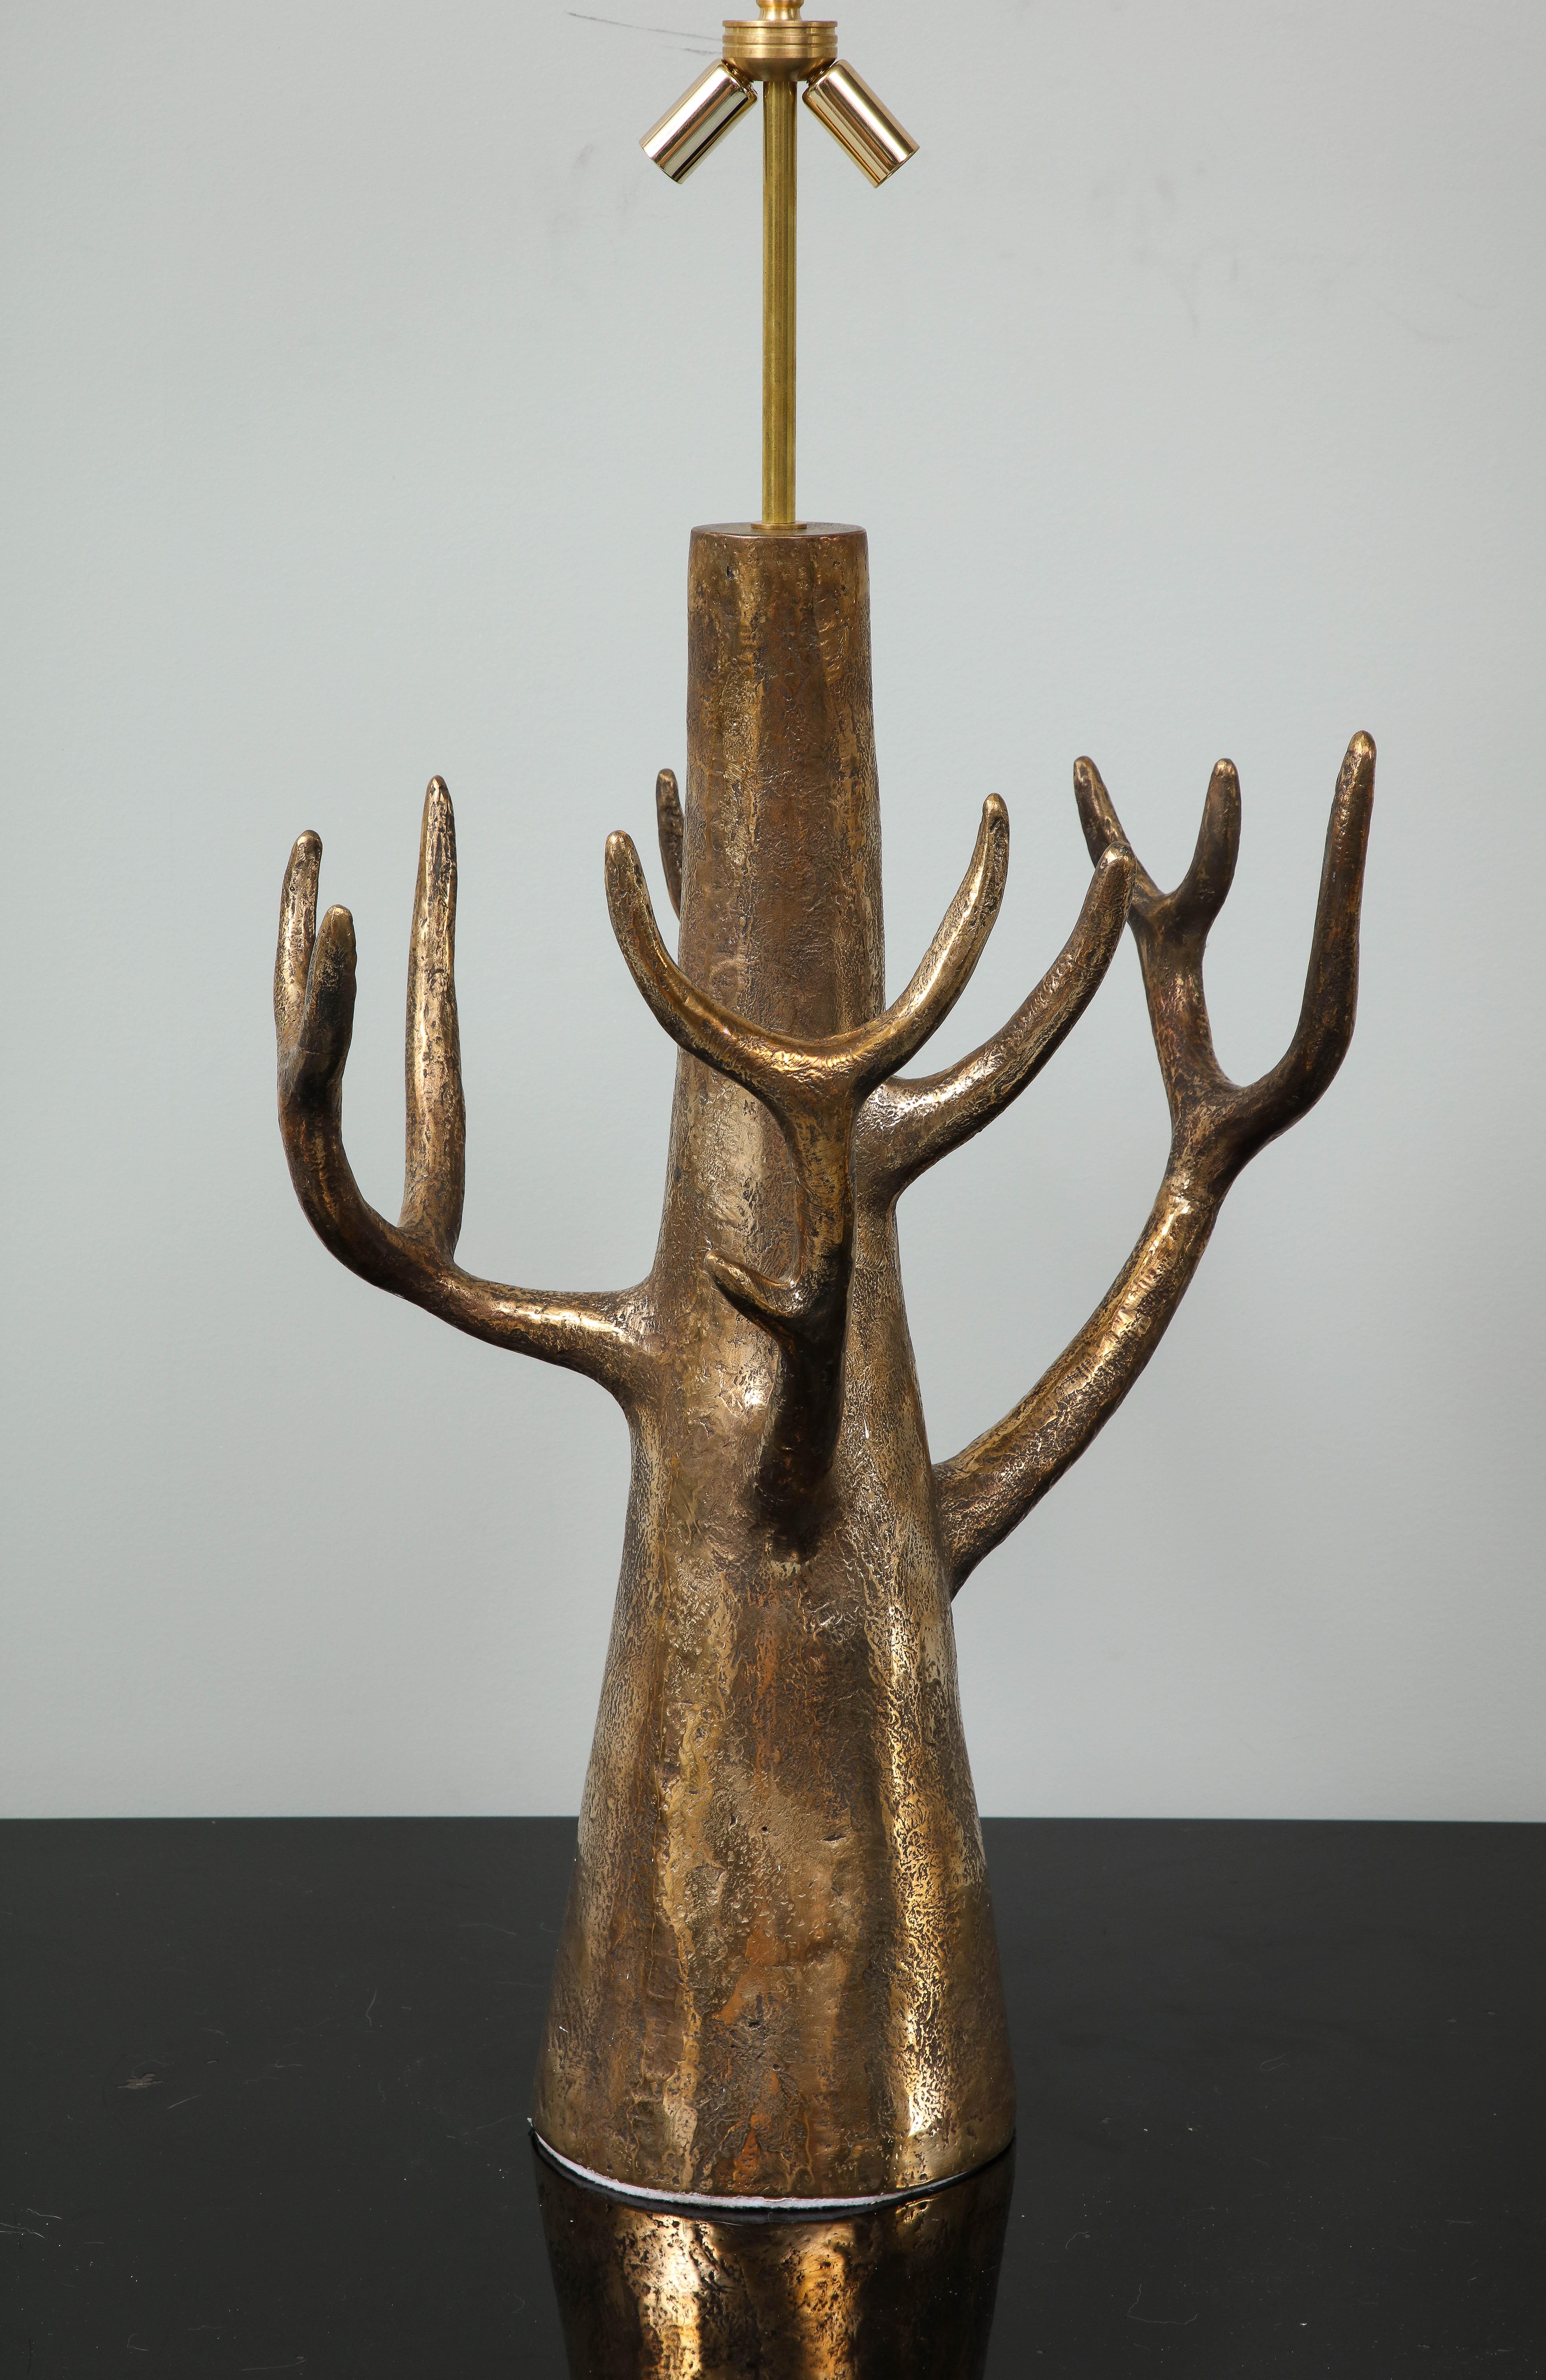 Diese Lampe aus Bronze ist ein Unikat mit der Nummer 2 von 8. Der Bildhauer hat nur 2 Exemplare hergestellt. Der Baum ist die Inspiration und diese Lampe, die aus amerikanischem Draht besteht, kann als eine Skulptur betrachtet werden. 